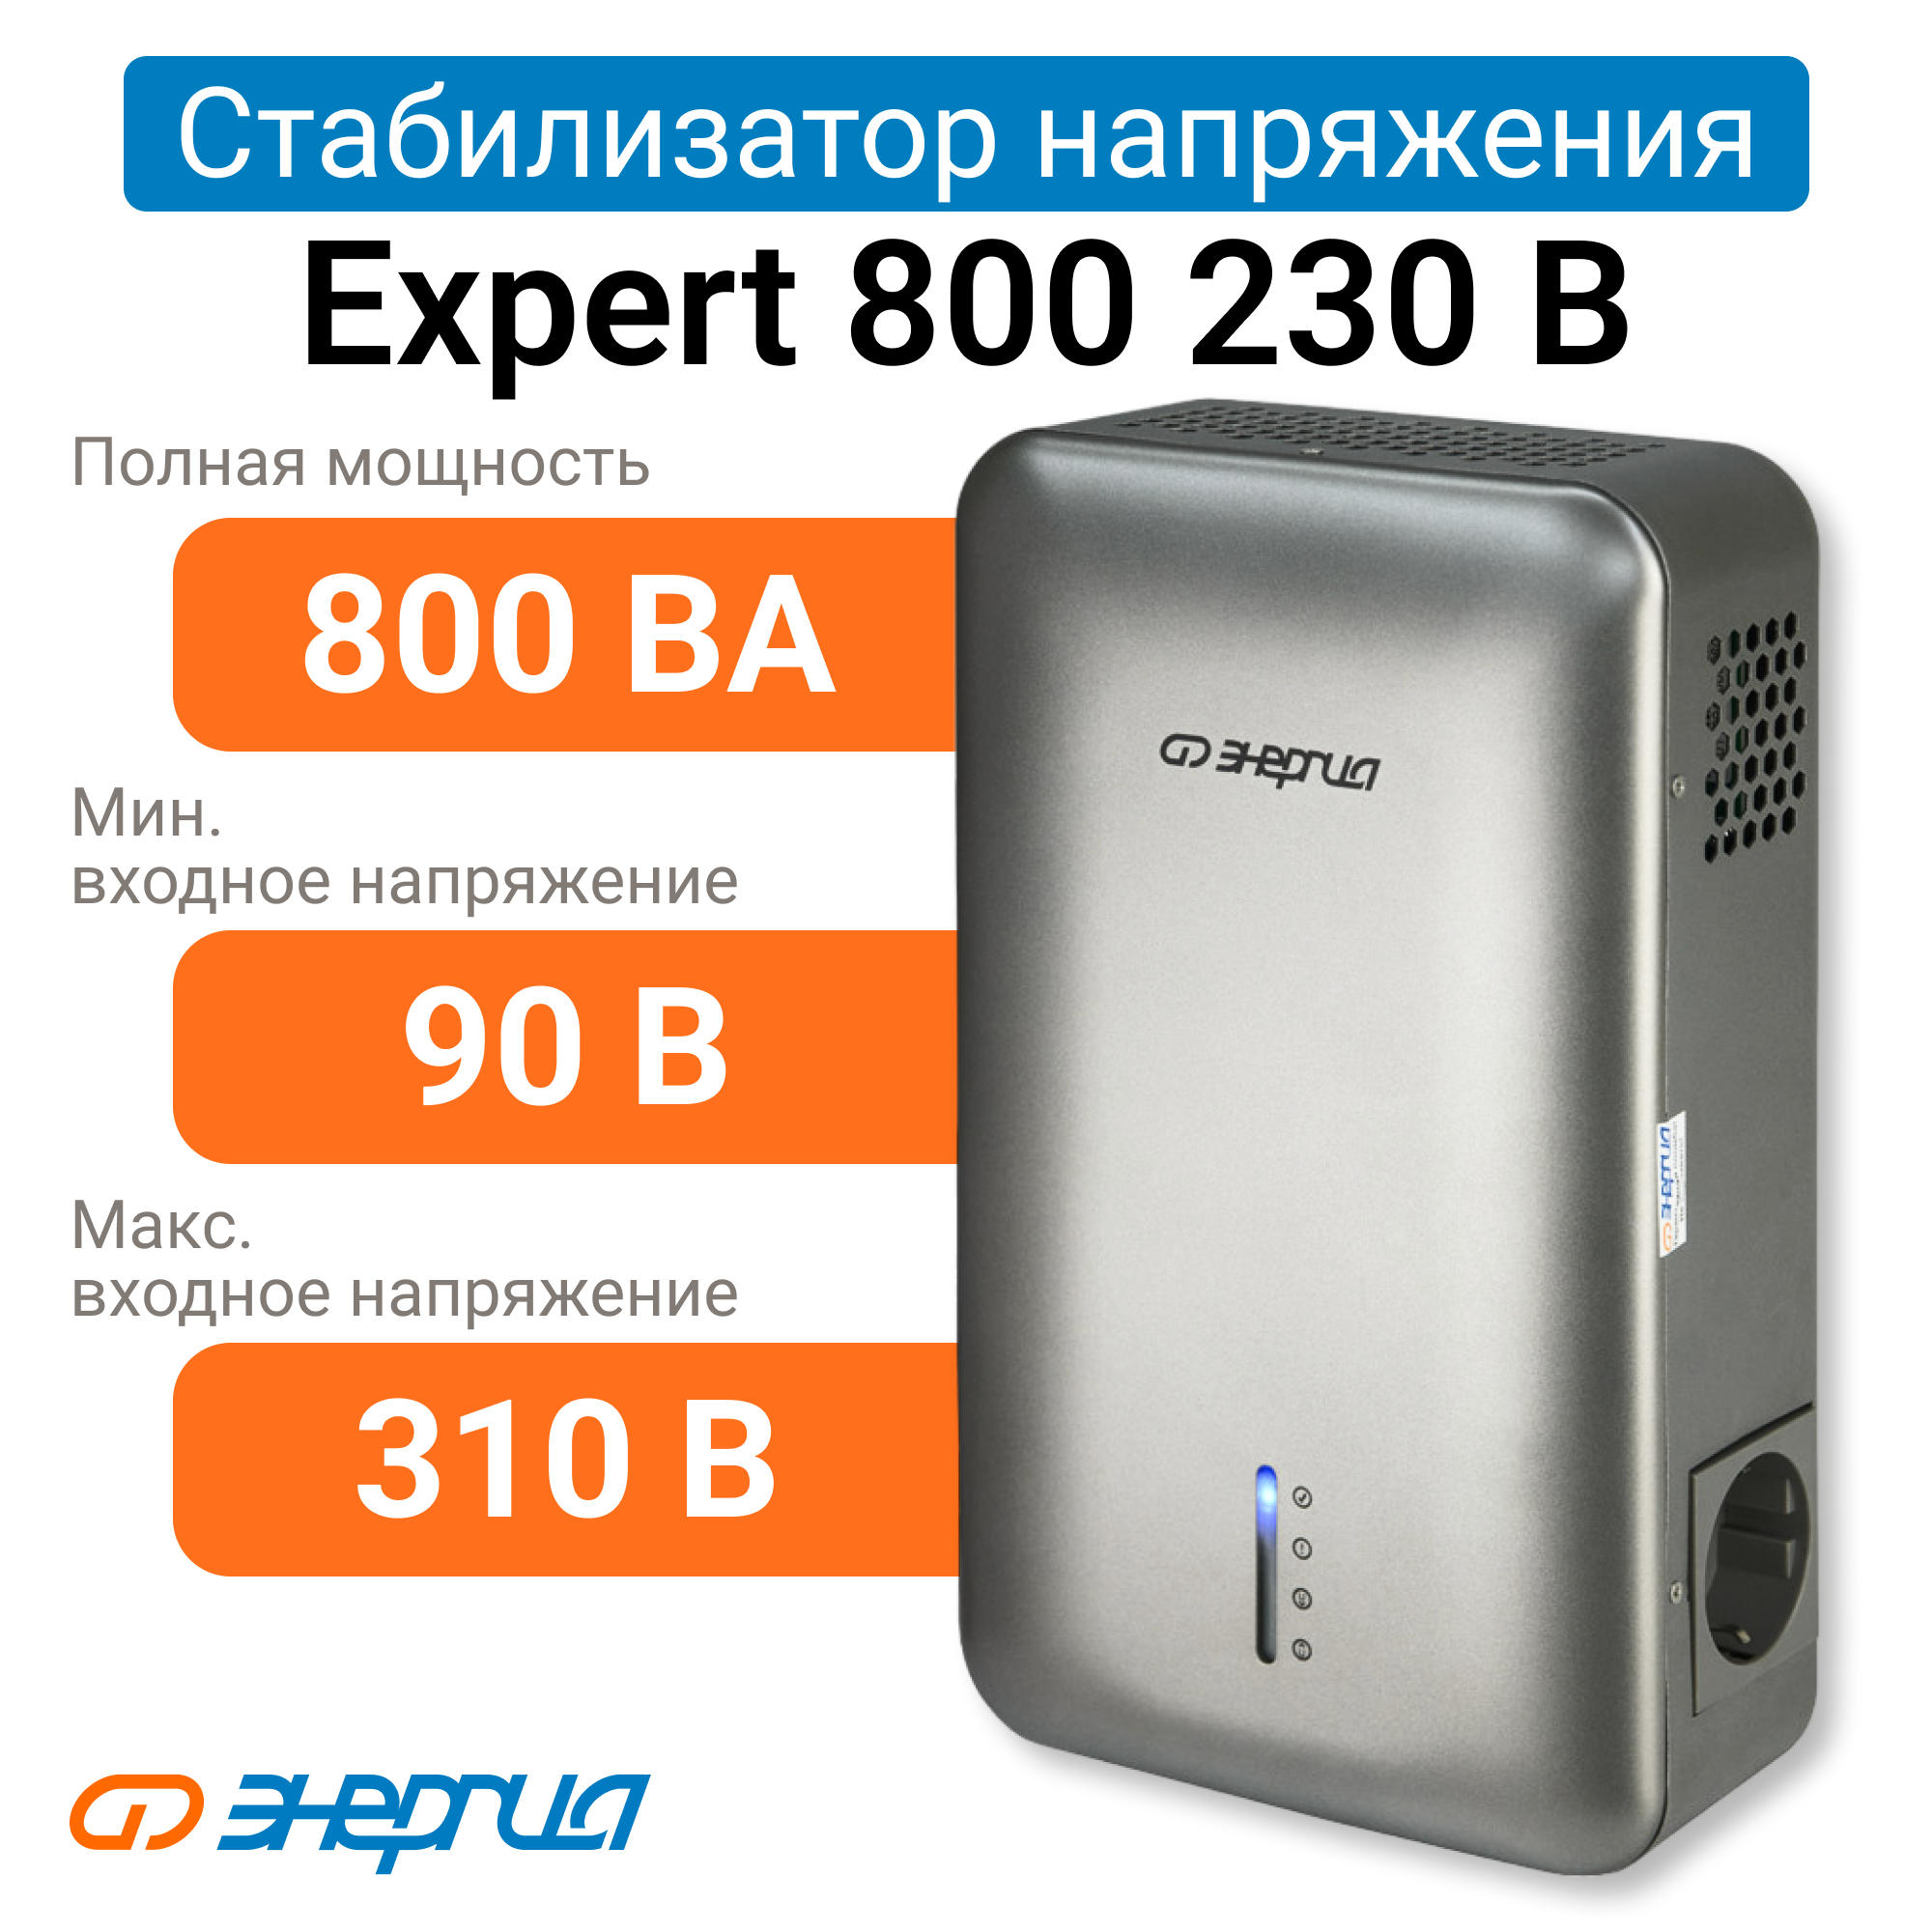 Стабилизатор напряжения Энергия Expert 800 230В (Е0101-0245) стабилизатор напряжения энергия hybrid ii 25000 е0101 0166